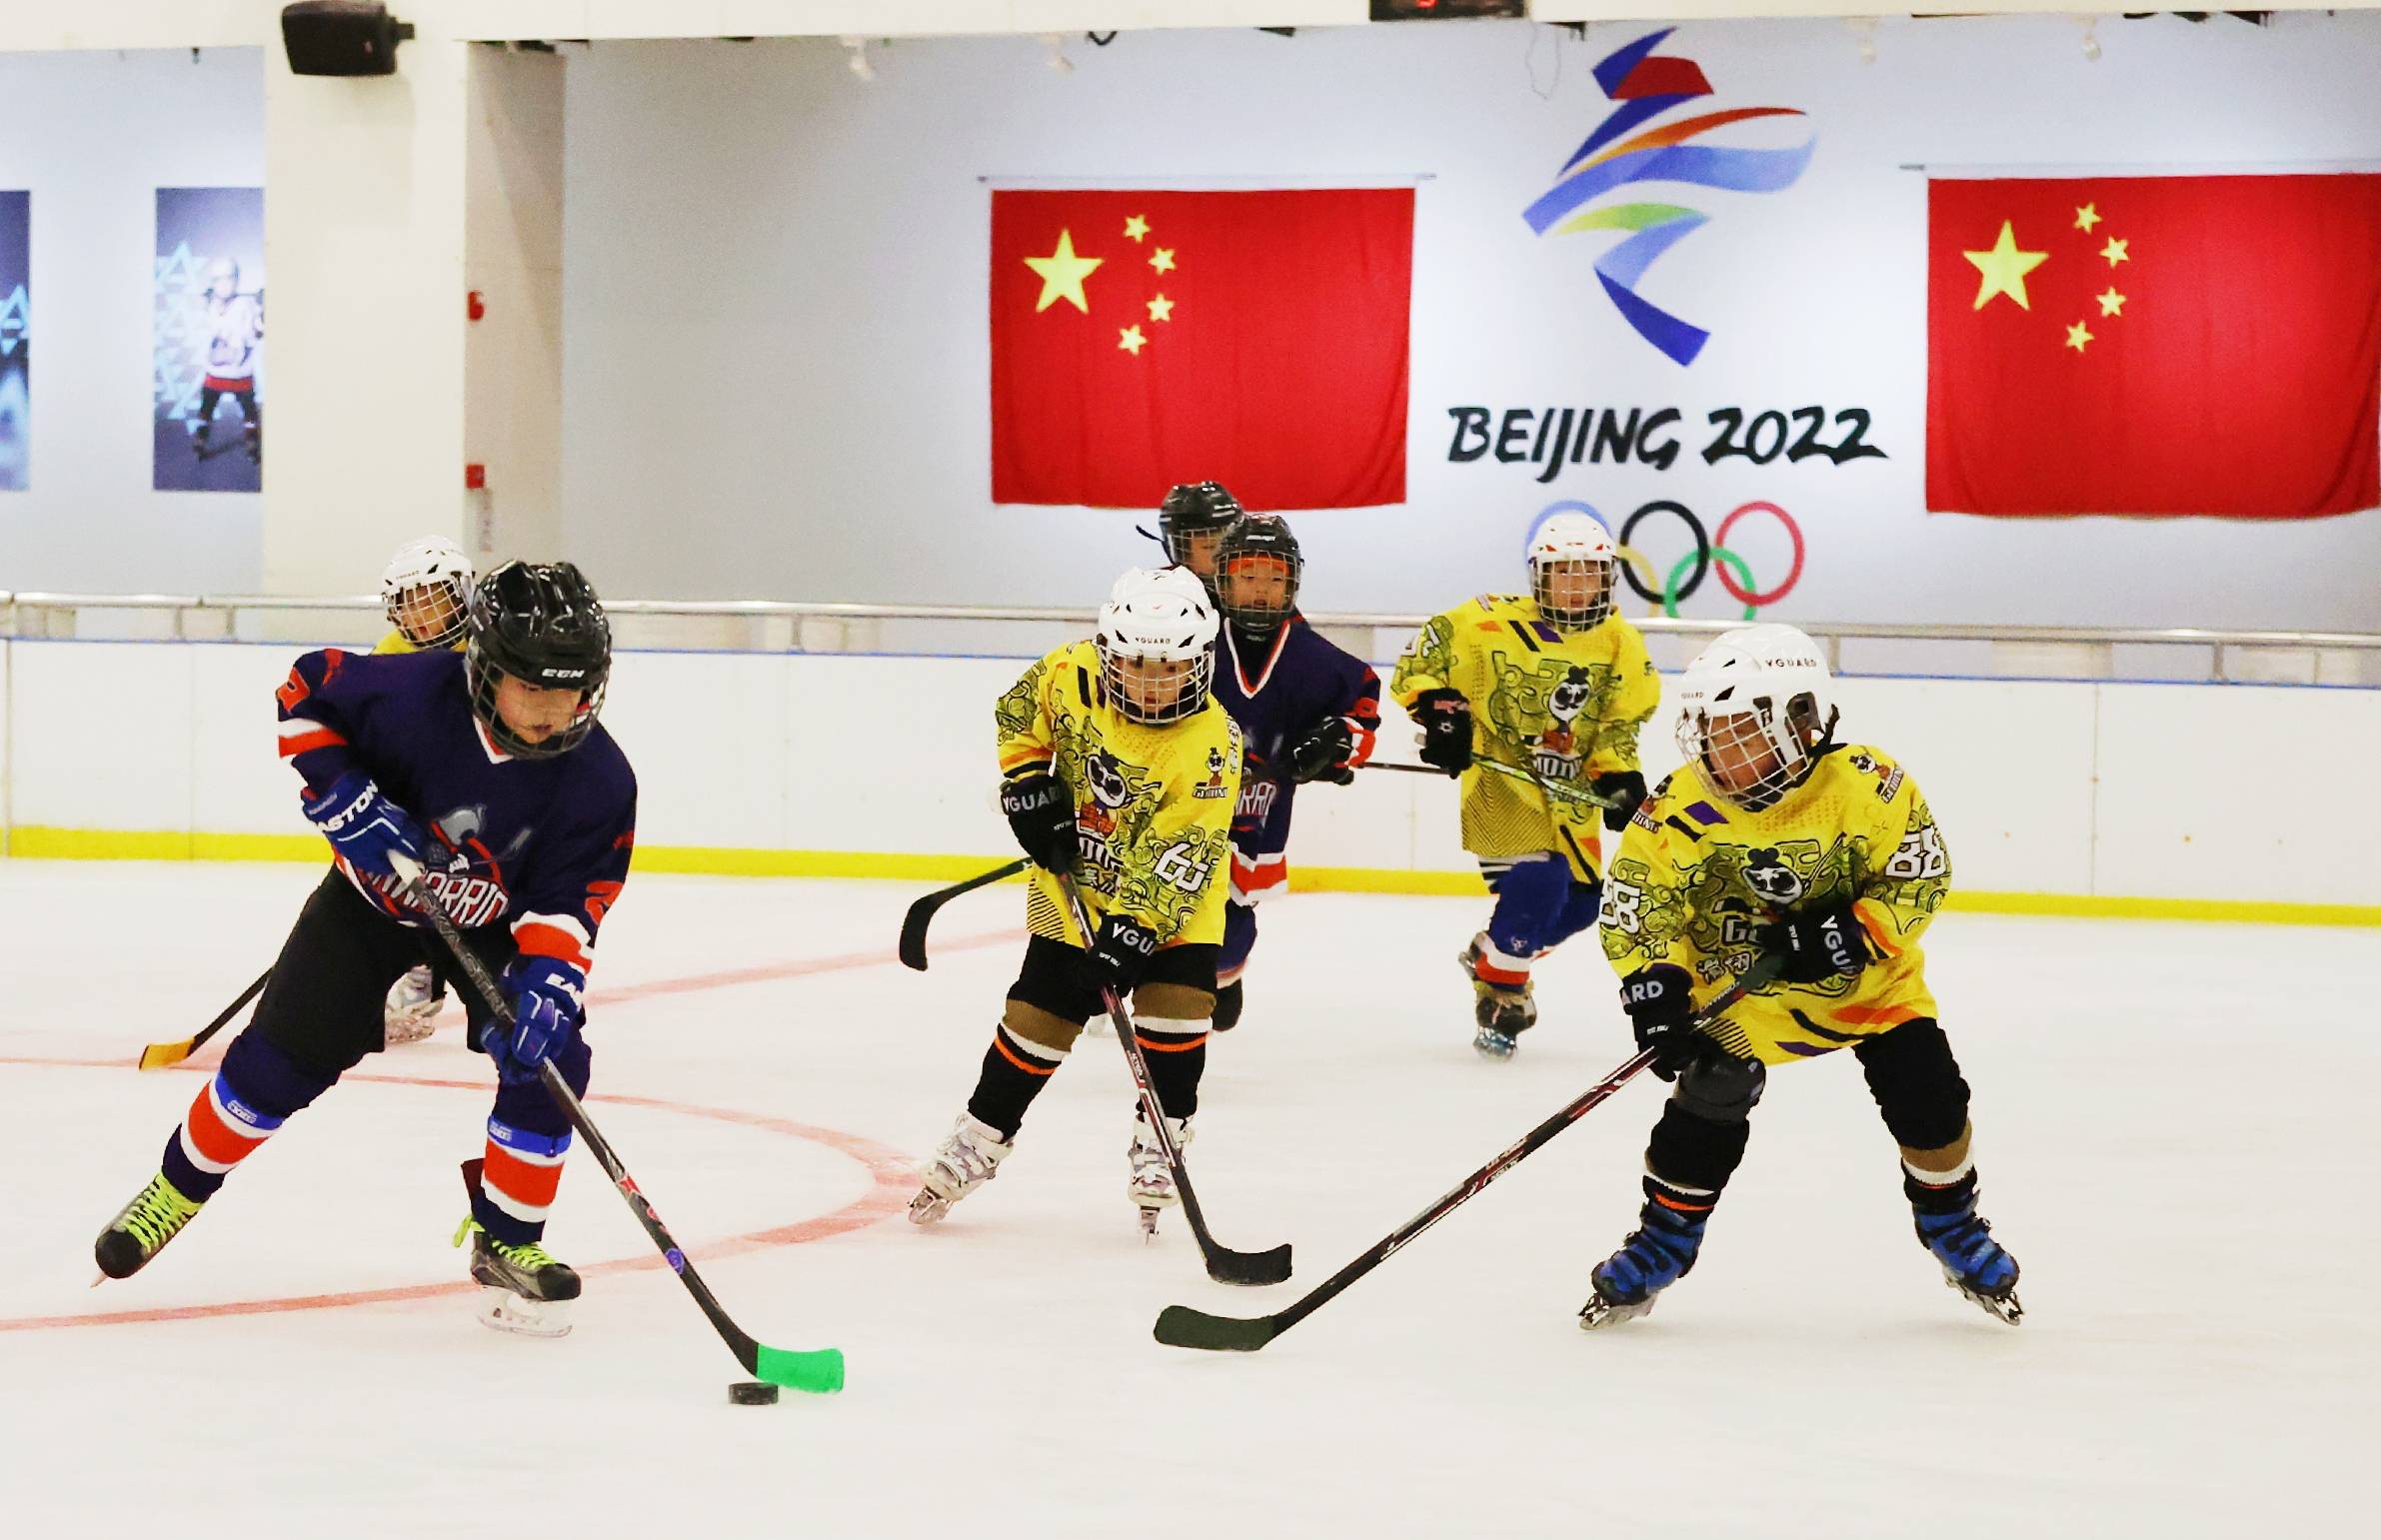 11支球队近200名小选手竞技陕西省第三届协会杯青少年冰球公开赛开战